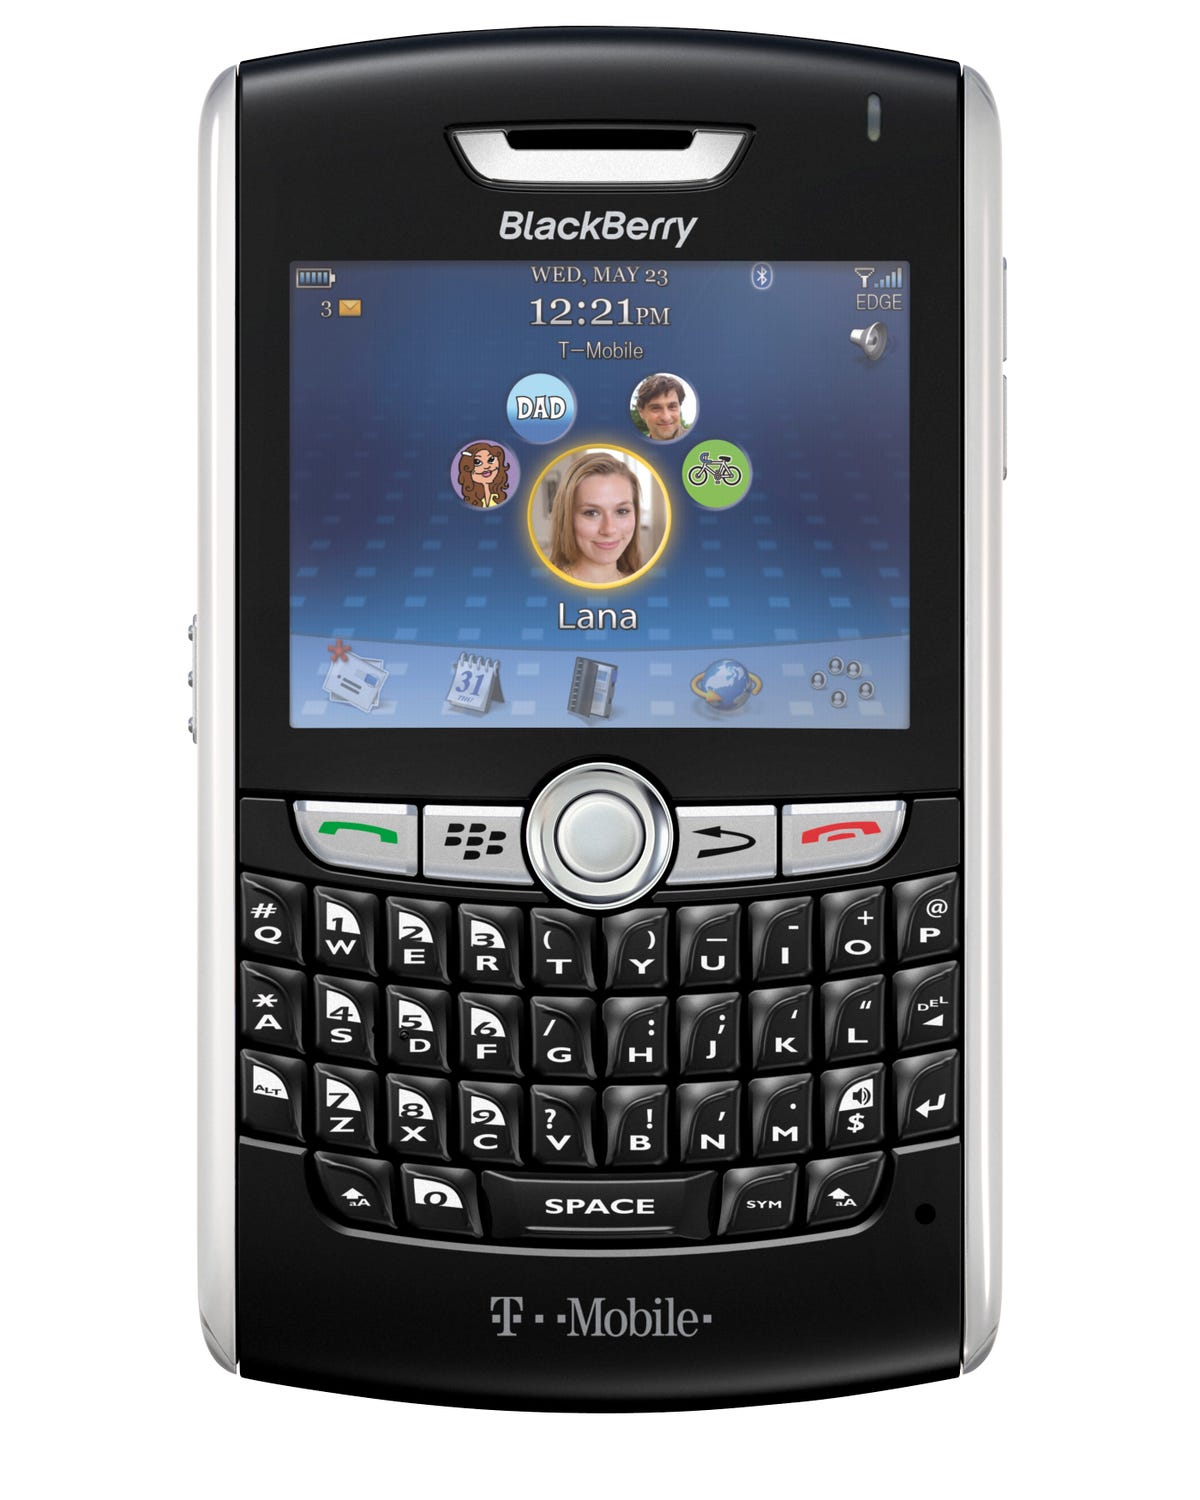 blackberry-8800_3.jpg